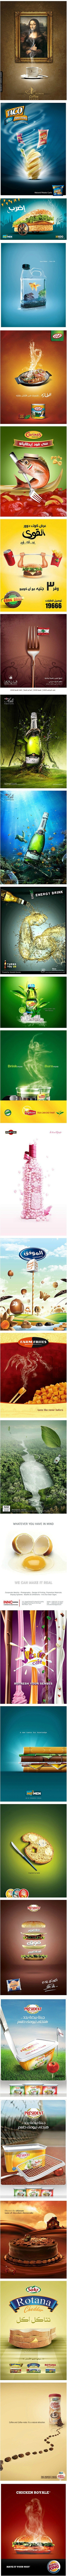 优秀食品海报创意设计集锦。@非创意不广告